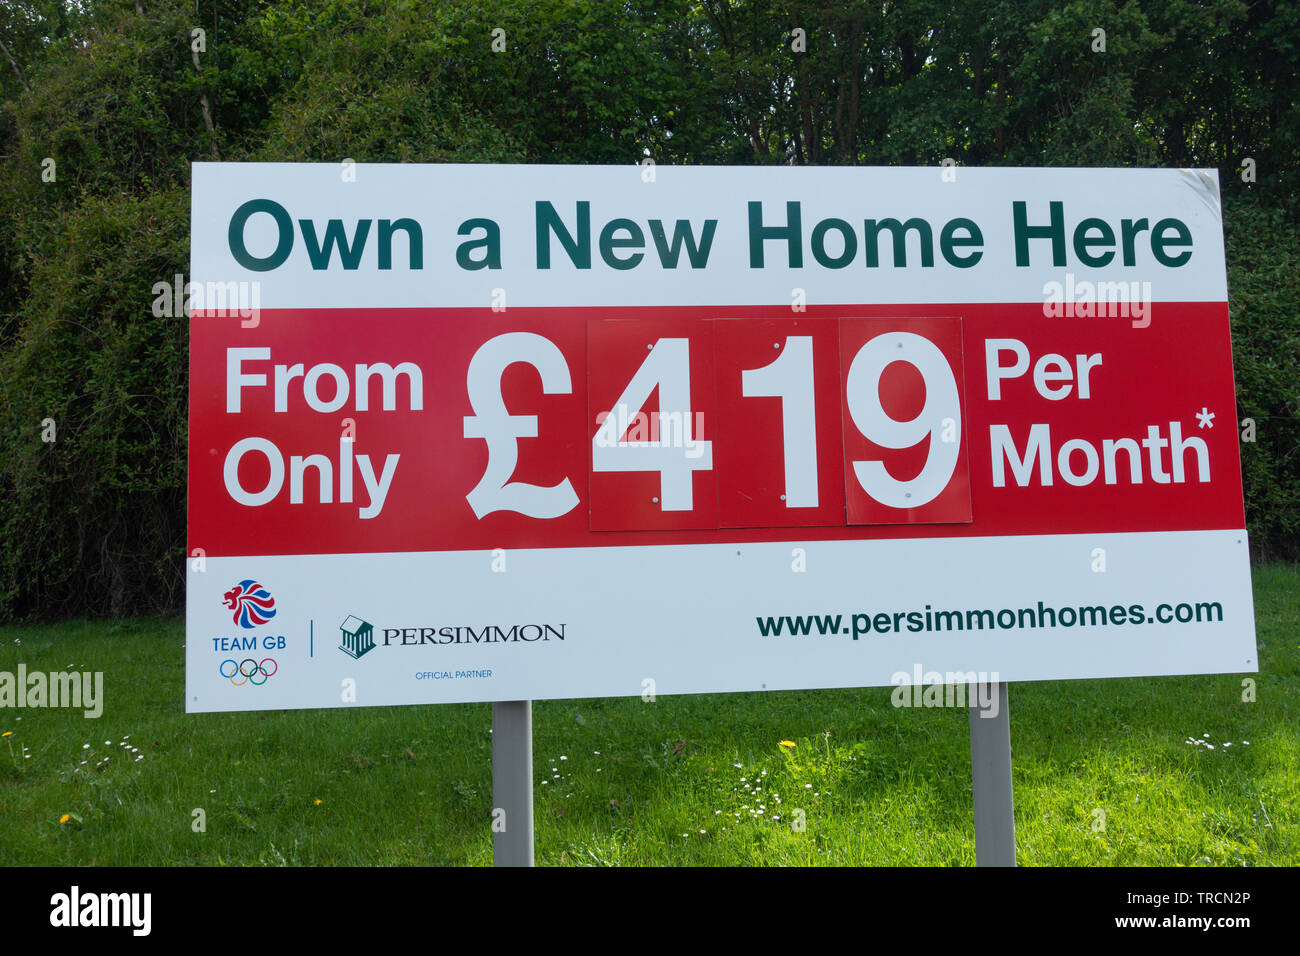 Persimmon Homes new housing development. UK Stock Photo